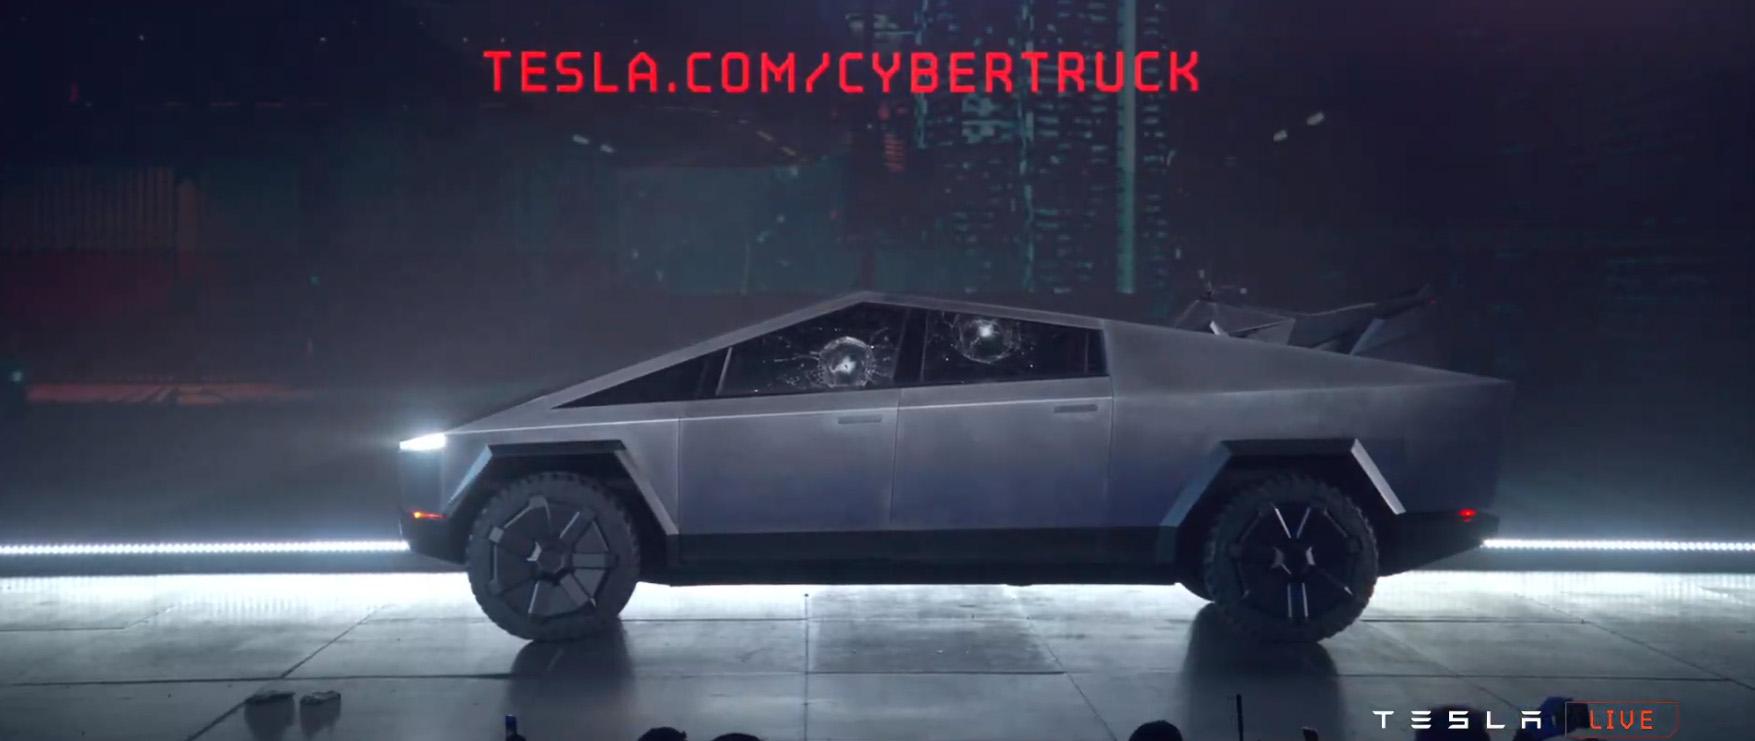 เตรียมจับตามอง! Elon Musk ทวีตข้อความ เสาะหาสถานที่สร้าง Cybertruck Gigafactory